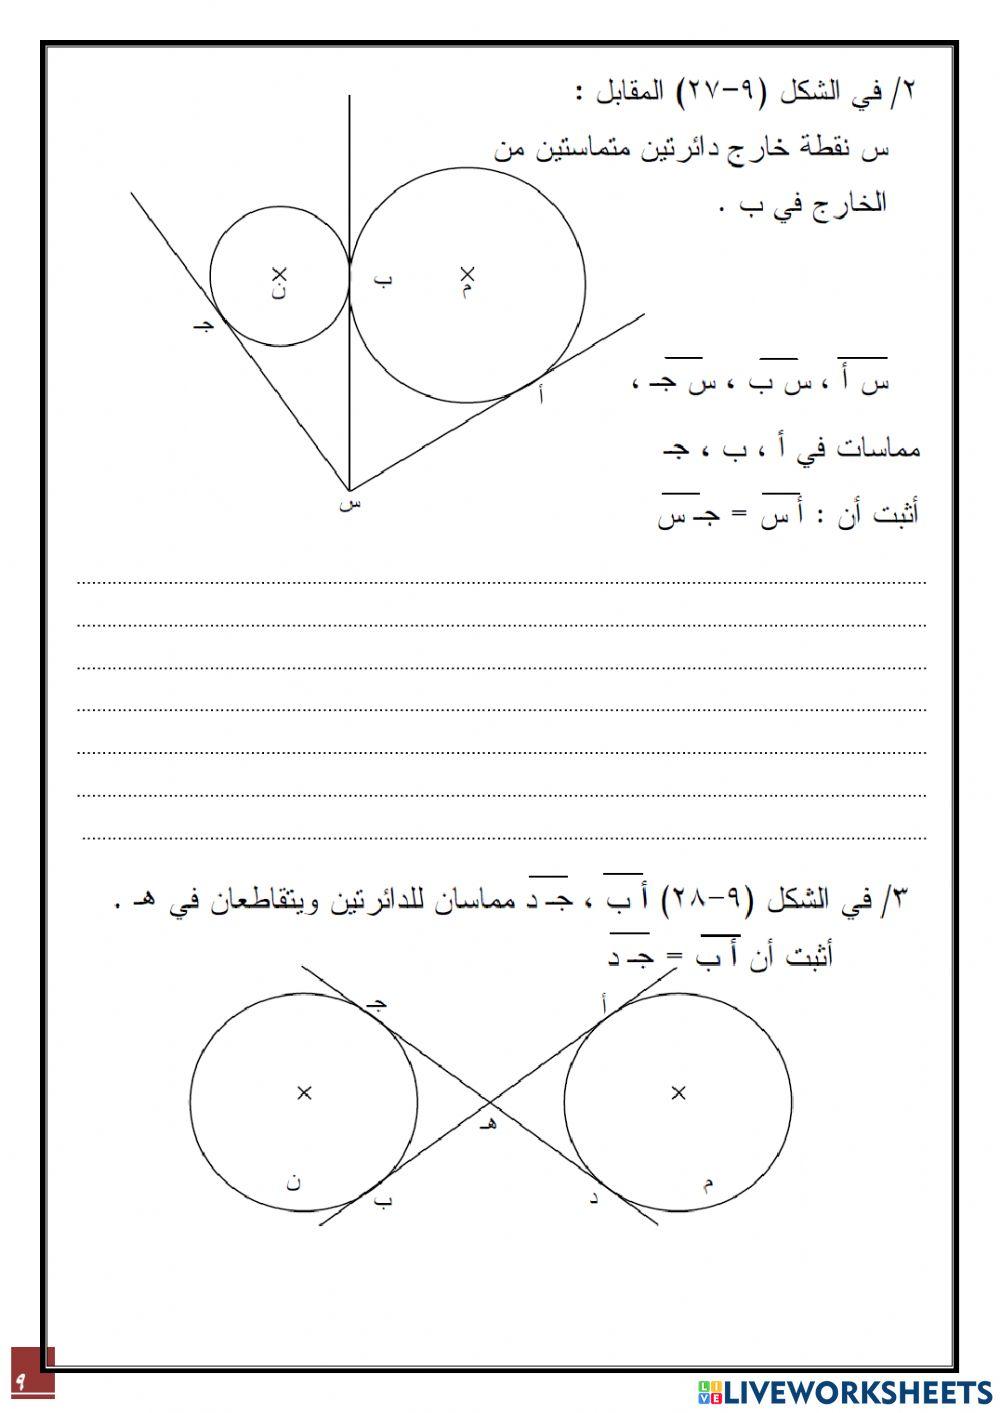 مسابقات نبراس التعليمية التفاعلية - أوراق عمل -الدائرة -رياضيات ثامن